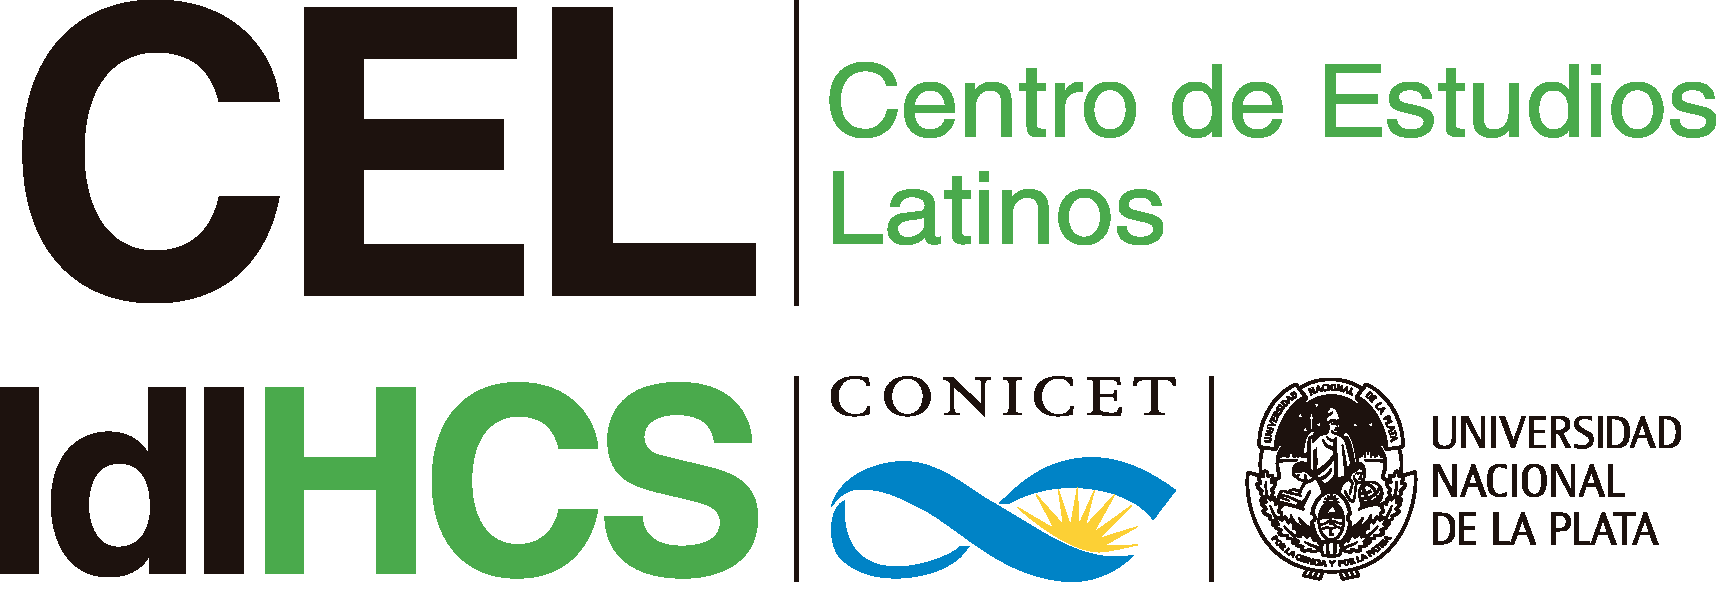 Centro de Estudios Latinos